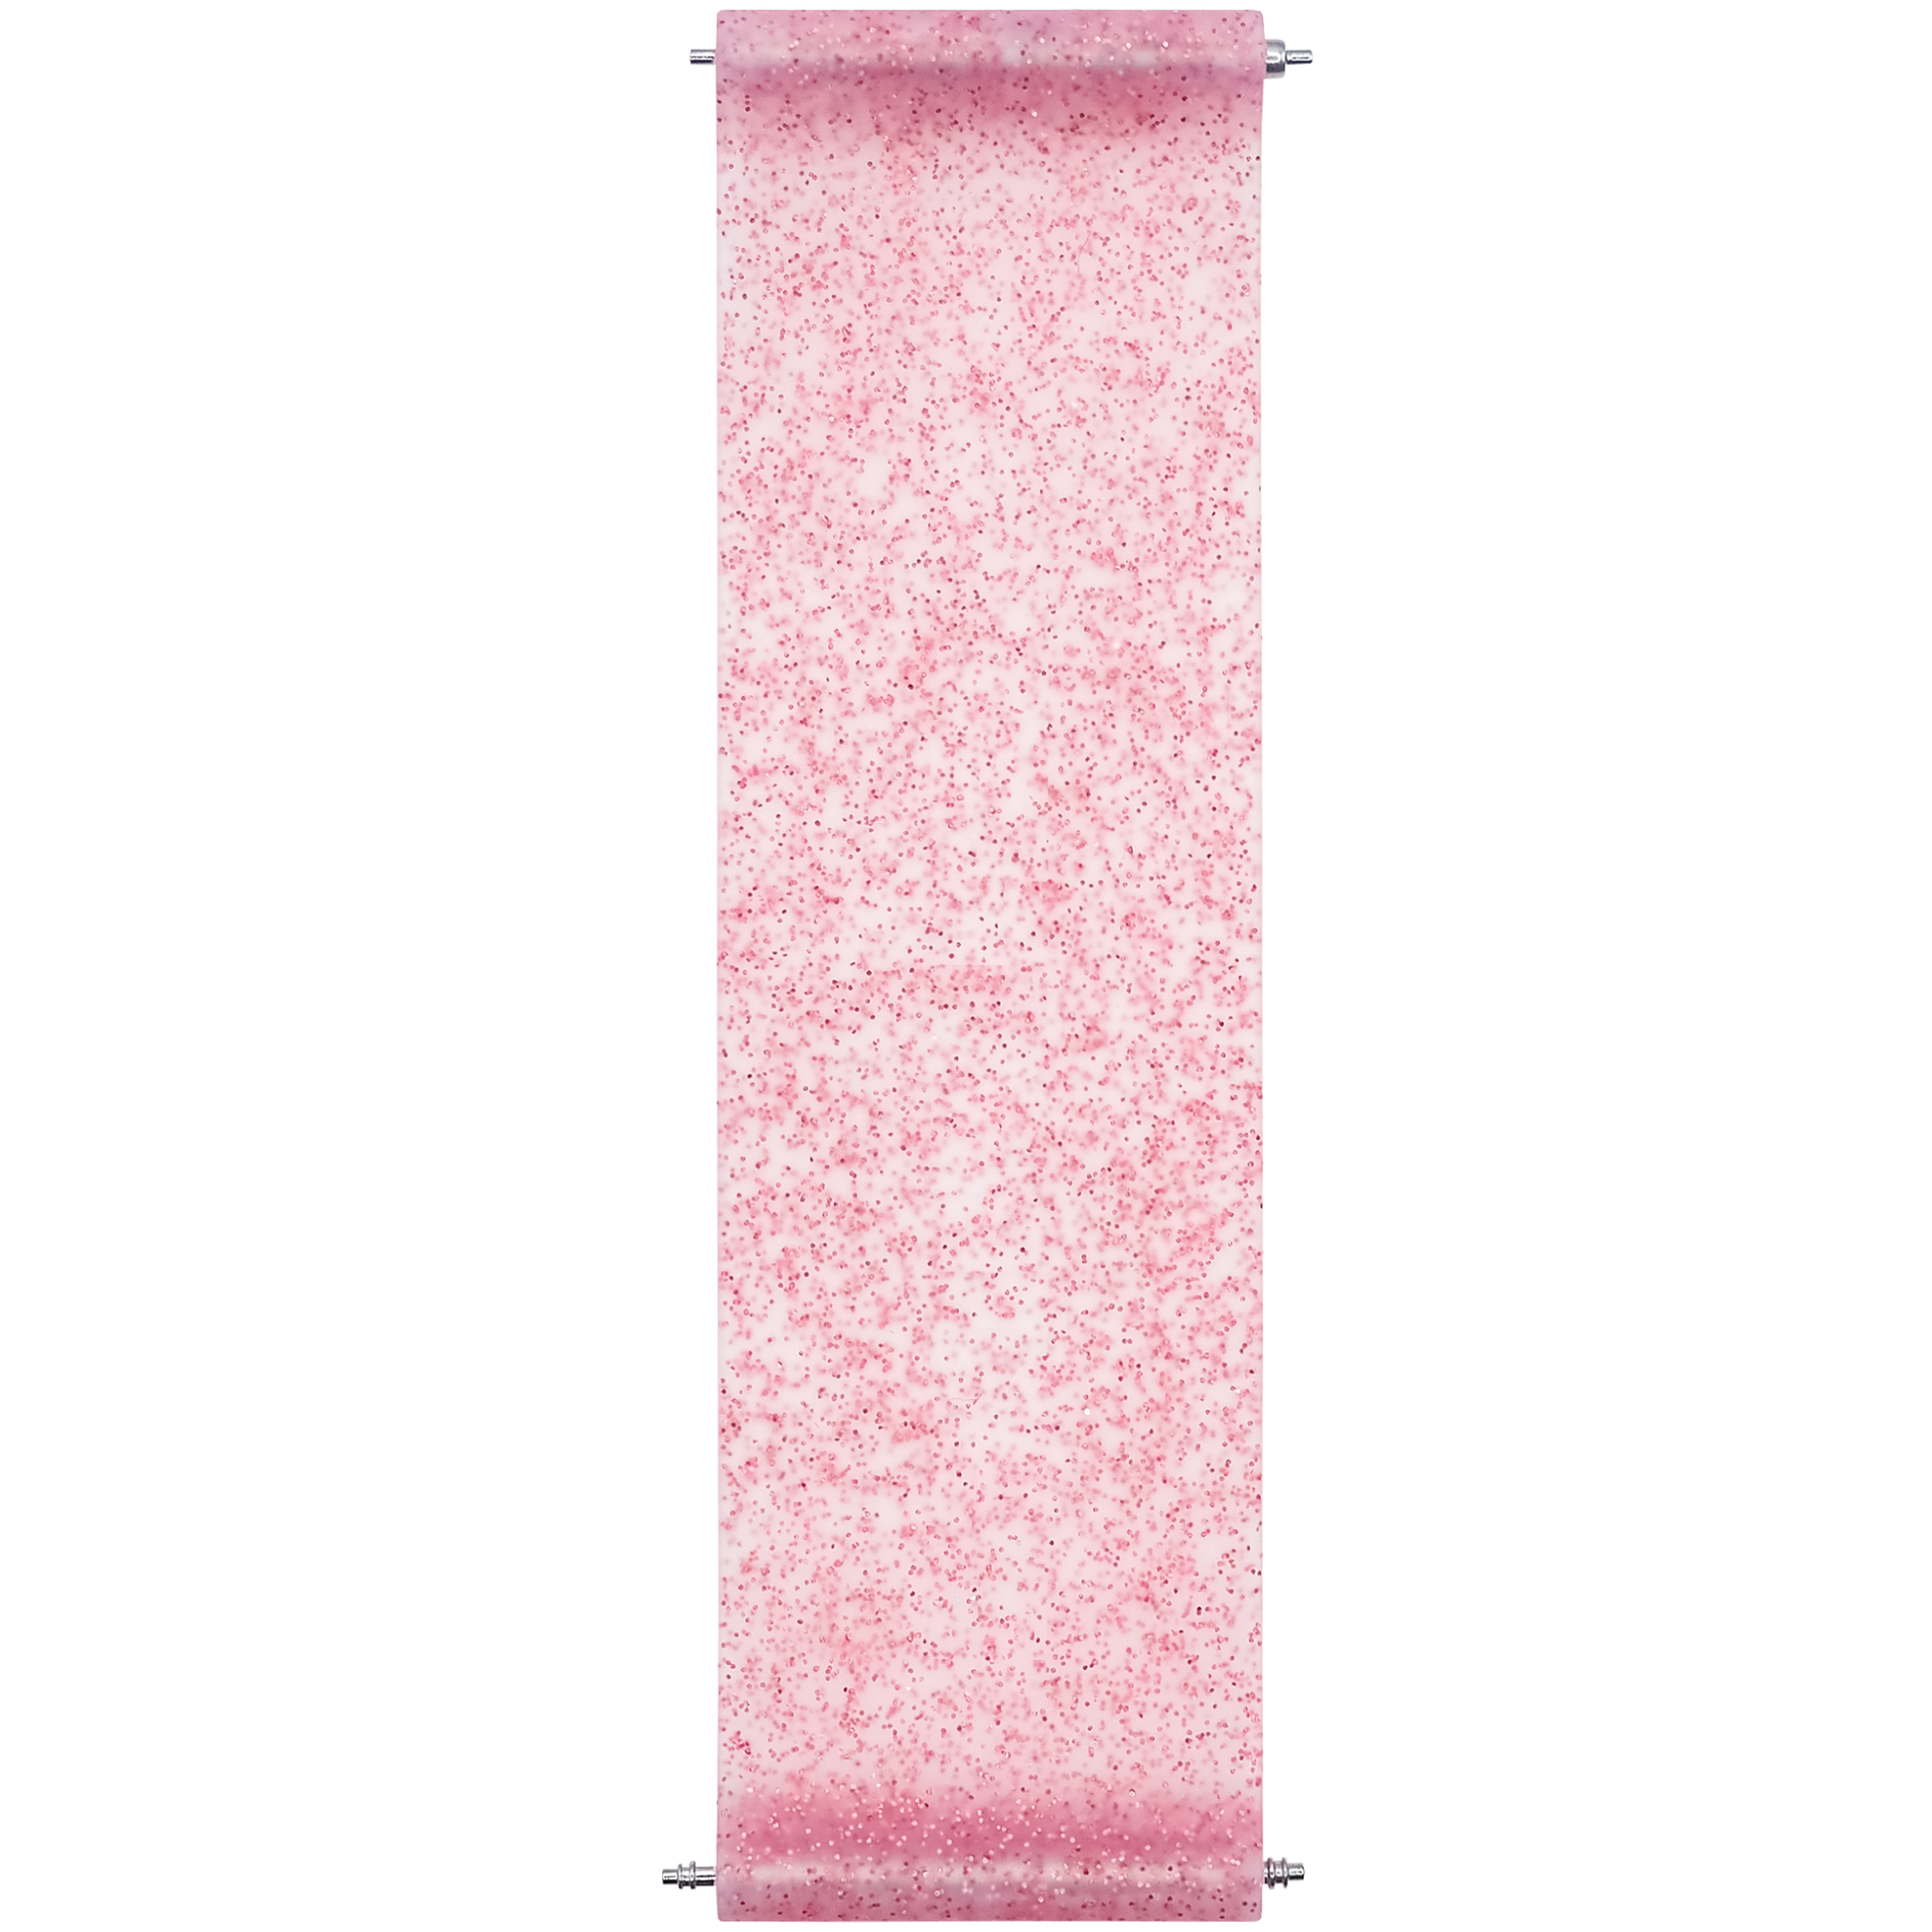 PRO Strap - Pink Diamond Glitter